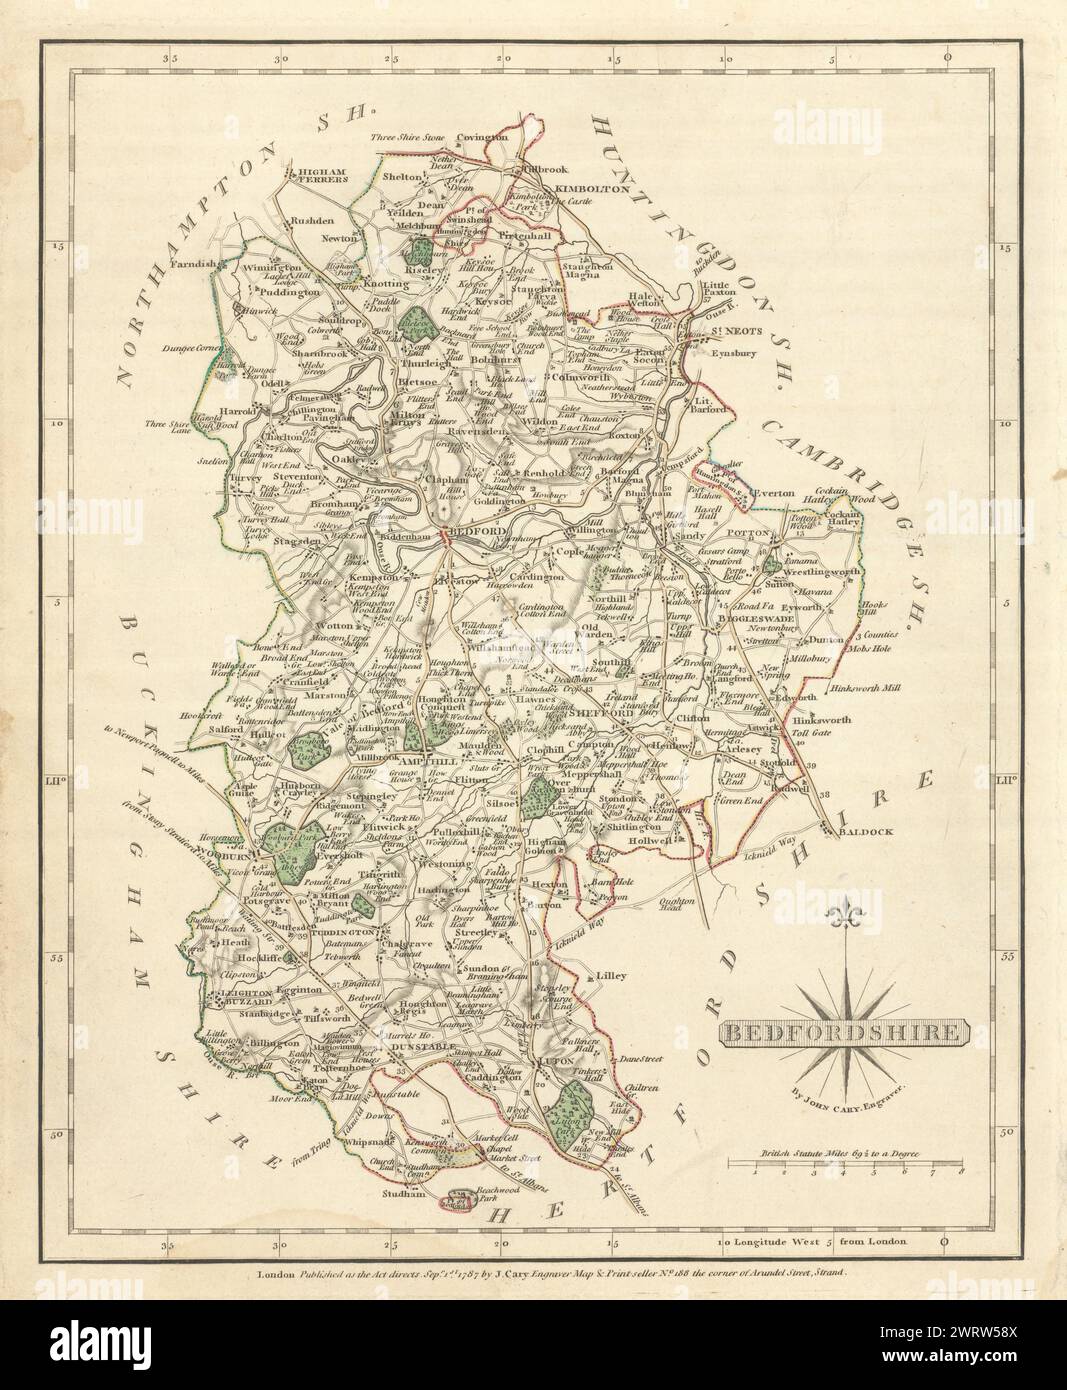 Antica mappa della contea del Bedfordshire da JOHN CARY. Originale a colori di contorno 1793 Foto Stock